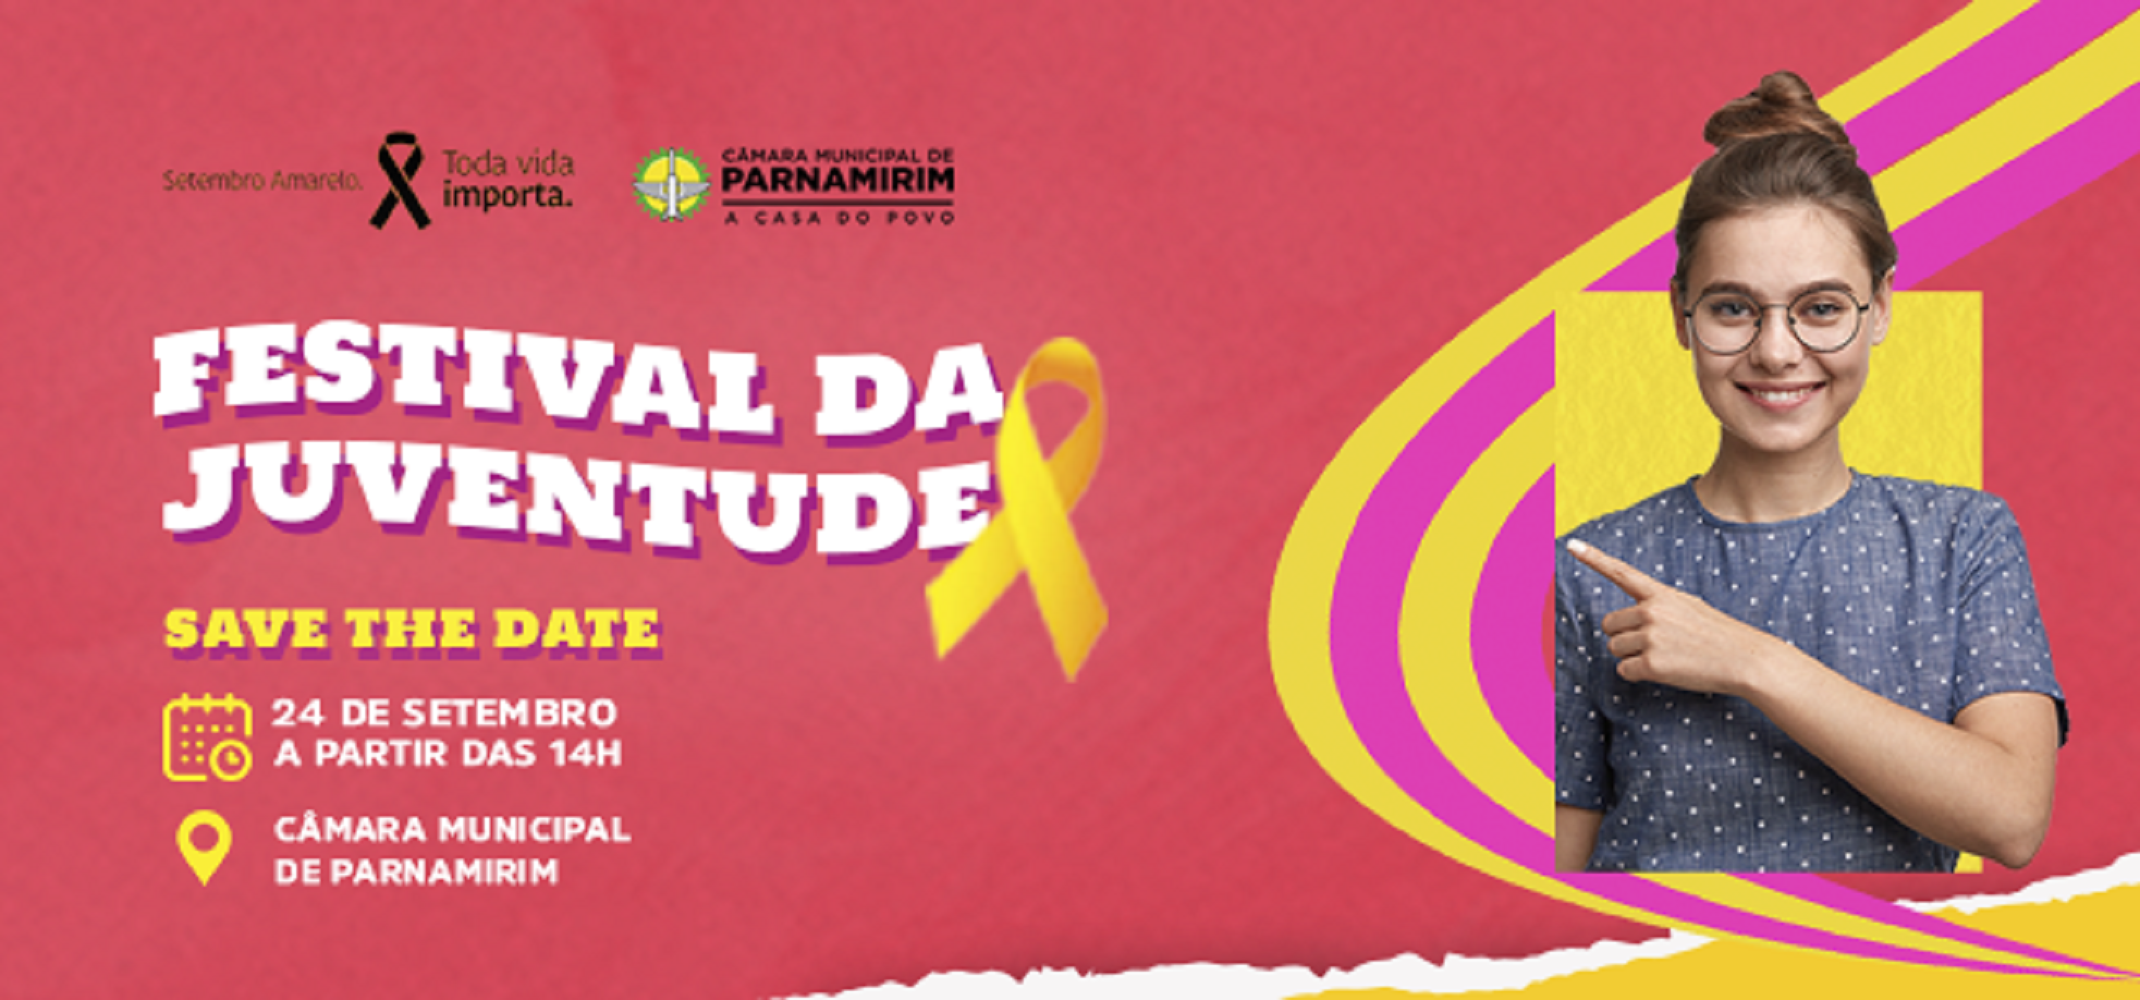 Câmara de Parnamirim promove, dia 24, Festival da Juventude alusivo ao Setembro Amarelo